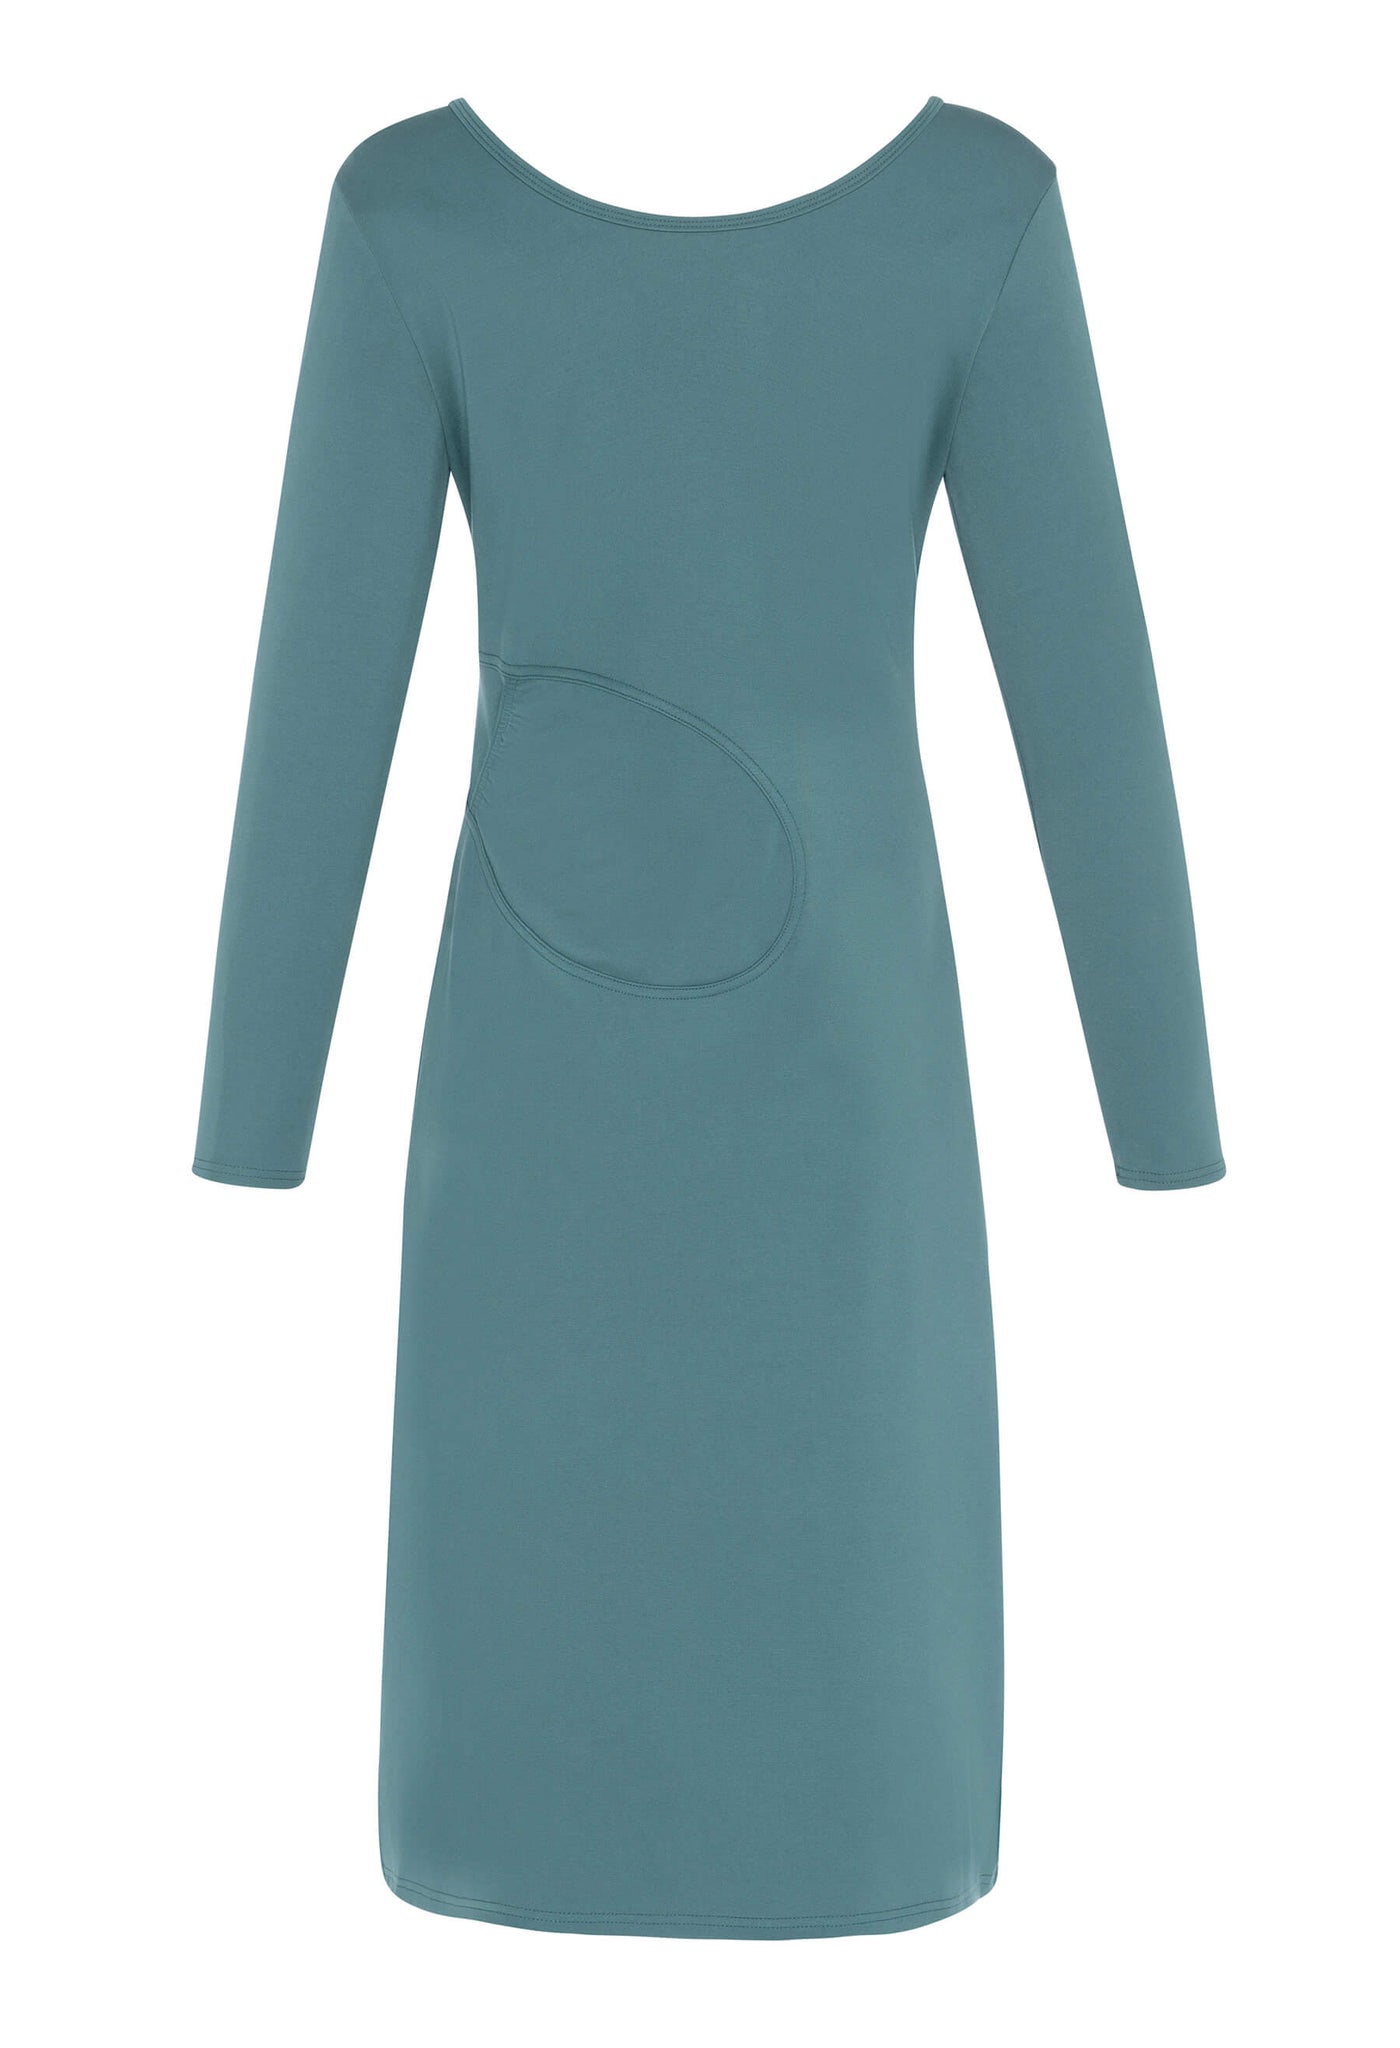 Découvrez la robe noire Amalia conçue par Katy St-Laurent. Cette robe bleue de longueur midi est élégante et offre un look raffiné.